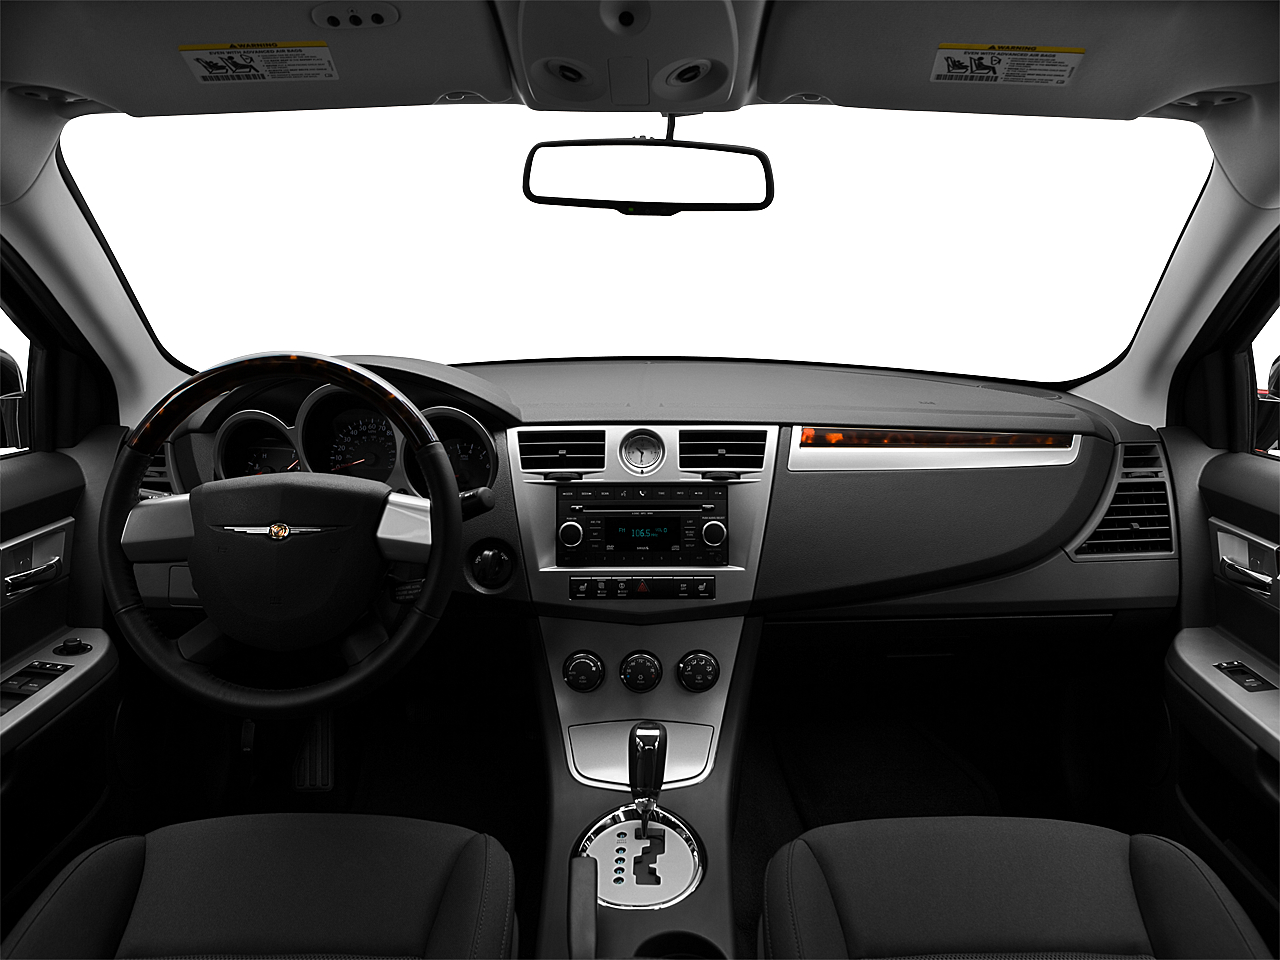 2010 Chrysler Sebring Touring 4dr Sedan - Research - GrooveCar